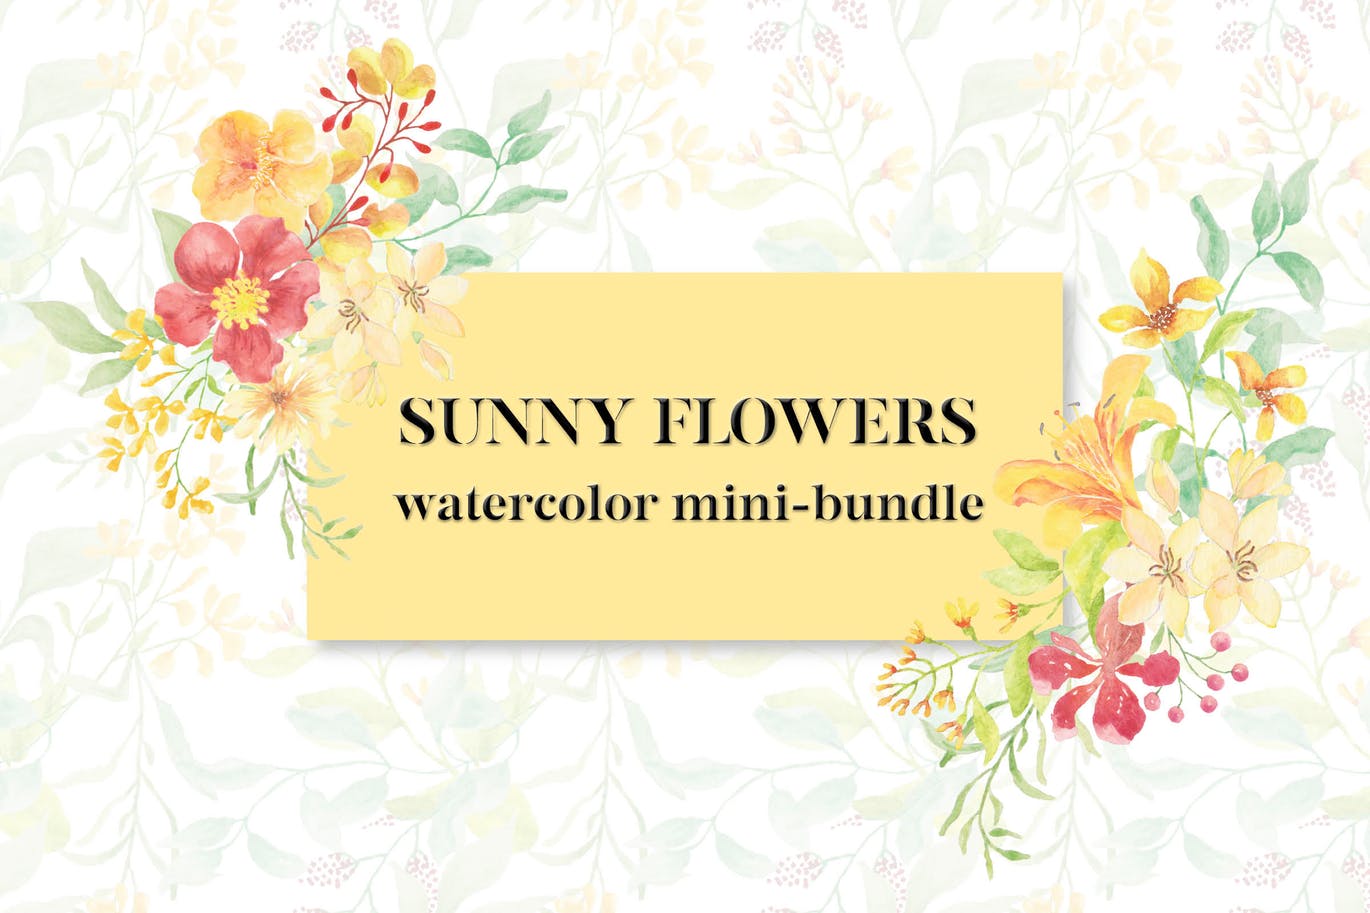 阳光明媚风格水彩花卉手绘图案剪贴画素材库精选PNG素材 Sunny Flowers: Watercolor Clip Art Mini Bundle插图